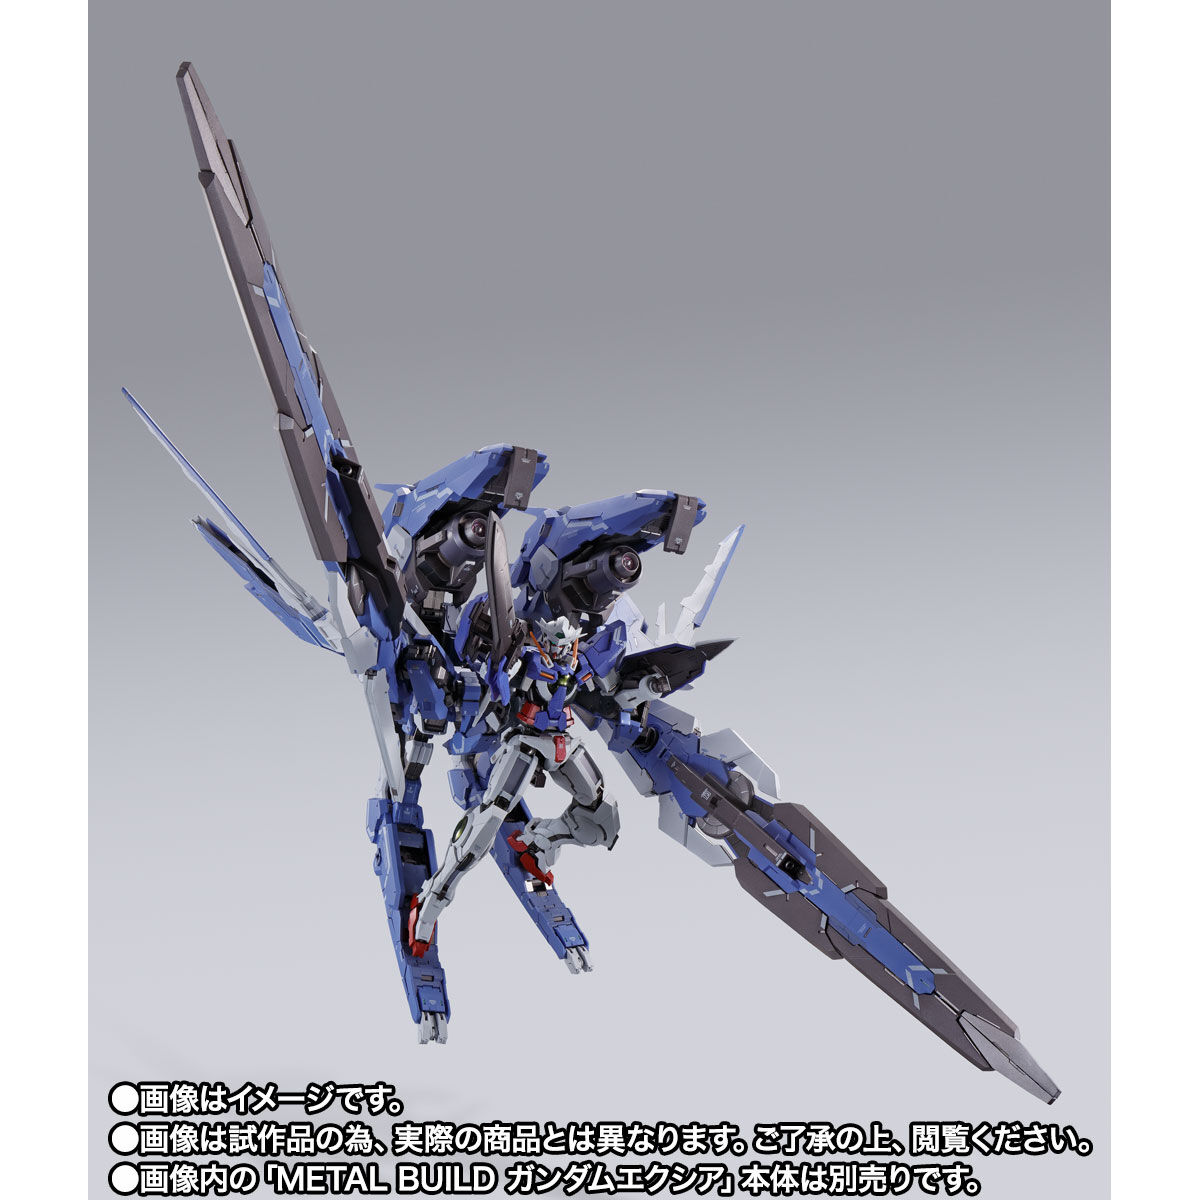 【限定販売】METAL BUILD『GNアームズ TYPE-E』 機動戦士ガンダム00 可動フィギュア-004